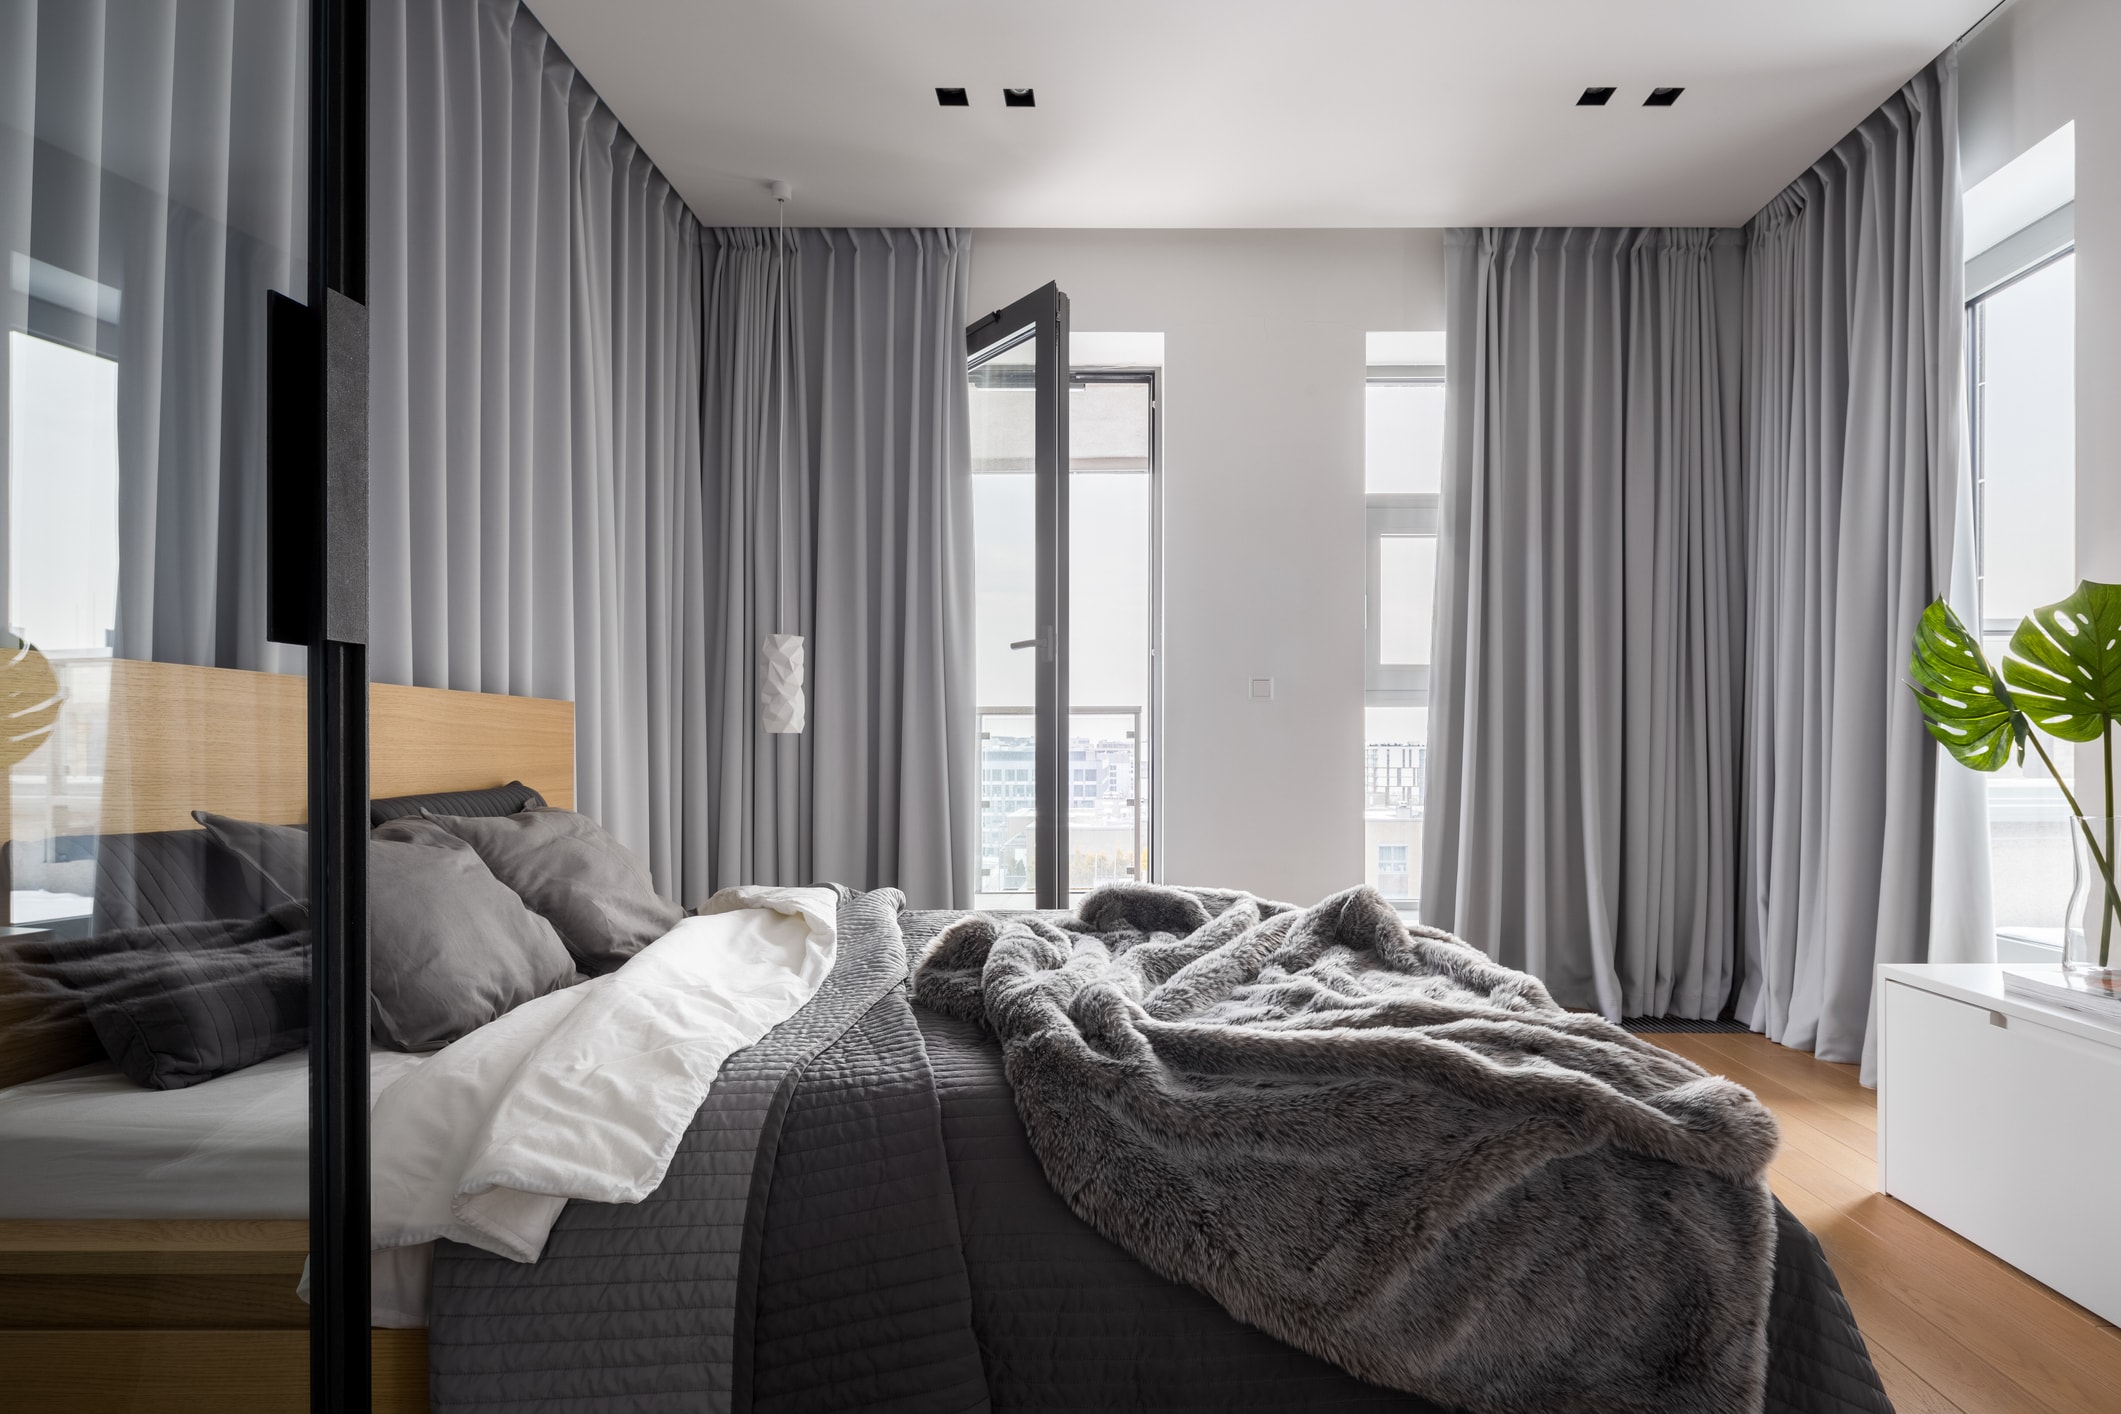 寝室のインテリアを リラックスしやすい雰囲気 に仕上げるコツ 公式 オーダーカーテン通販 Wardrobe Sangetsu